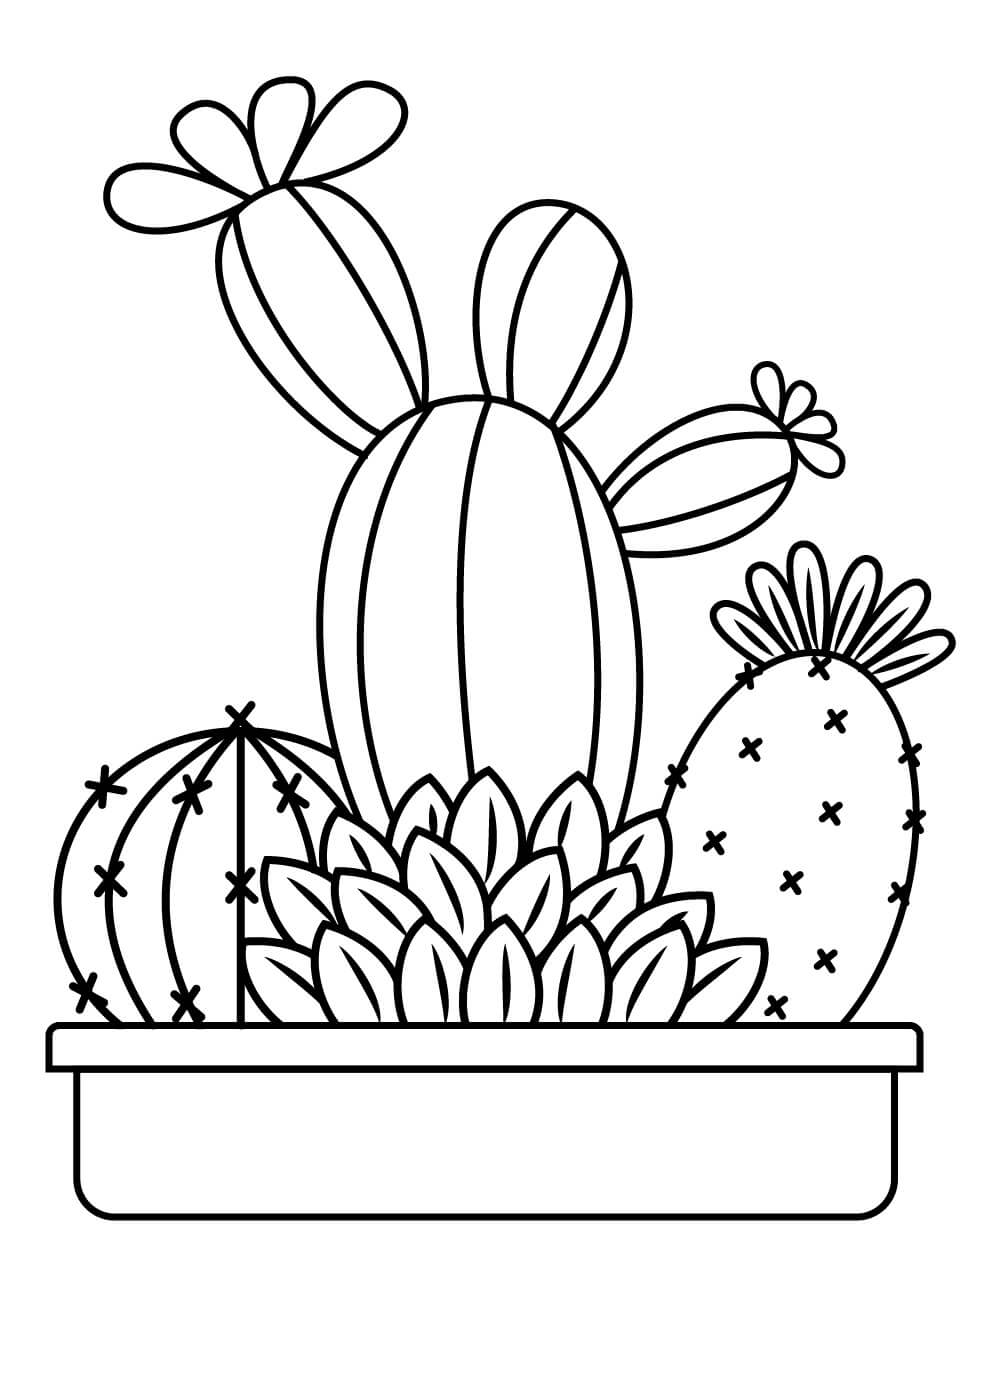 Cactus in pot